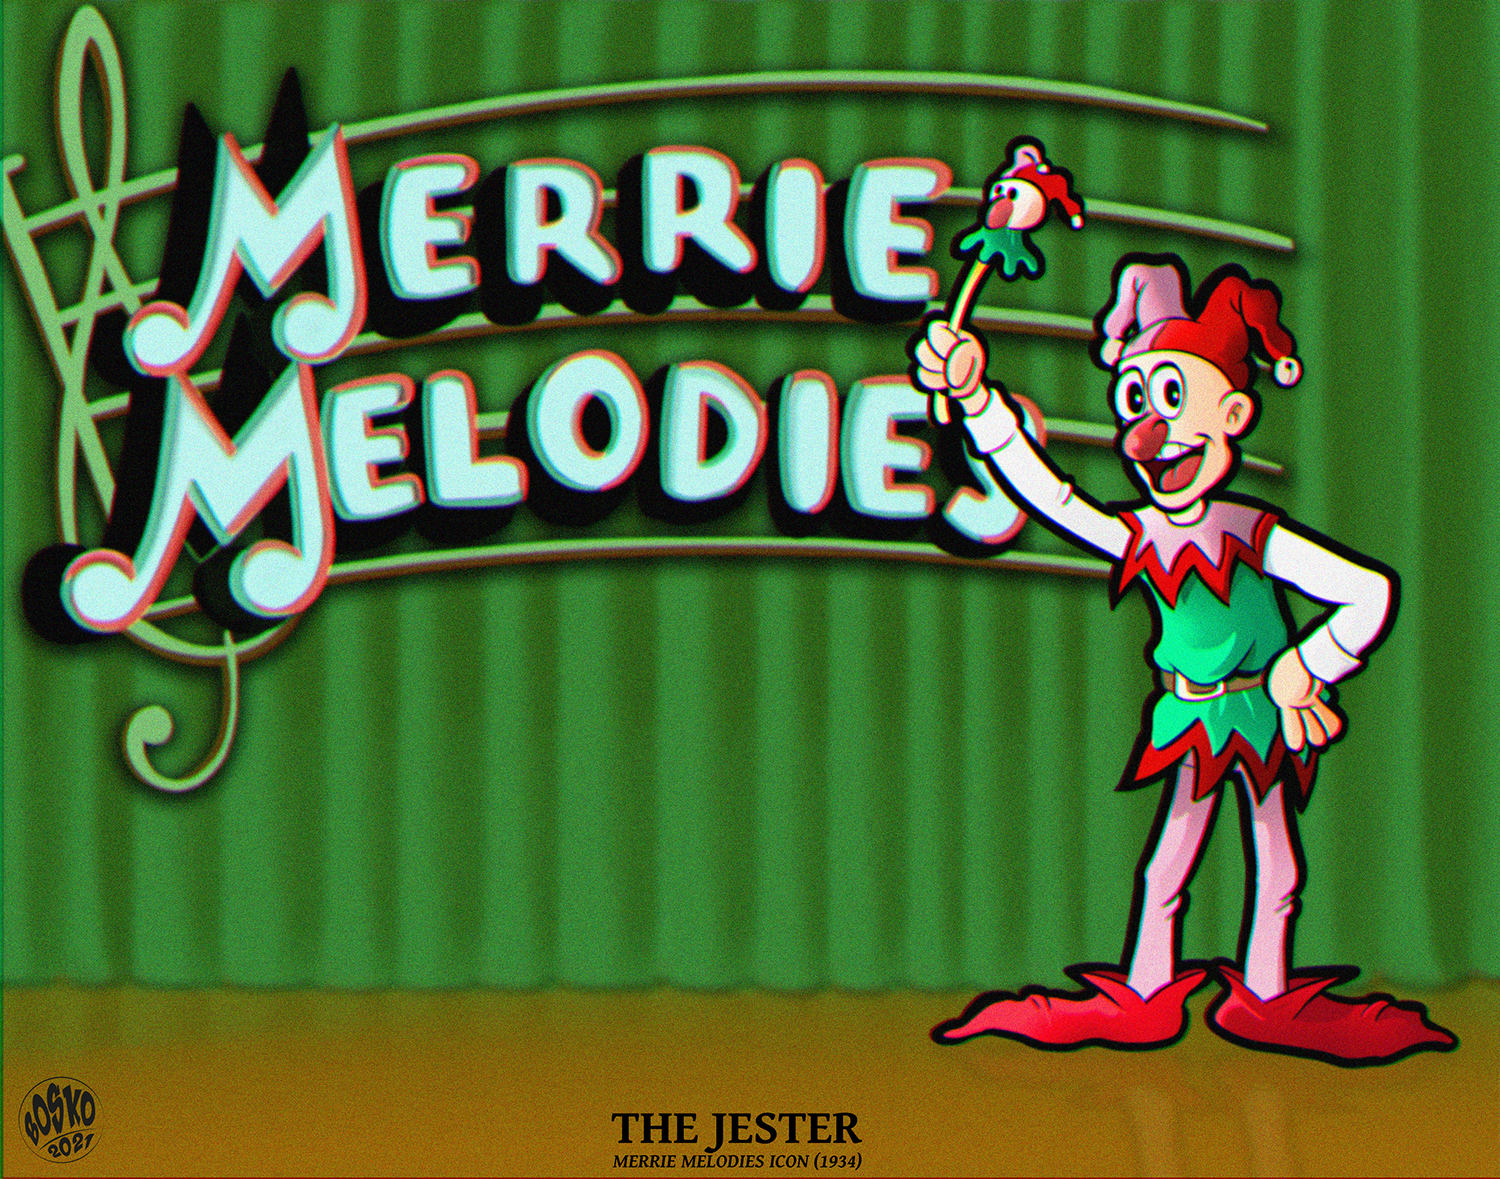 1934 - Merrie Melodies